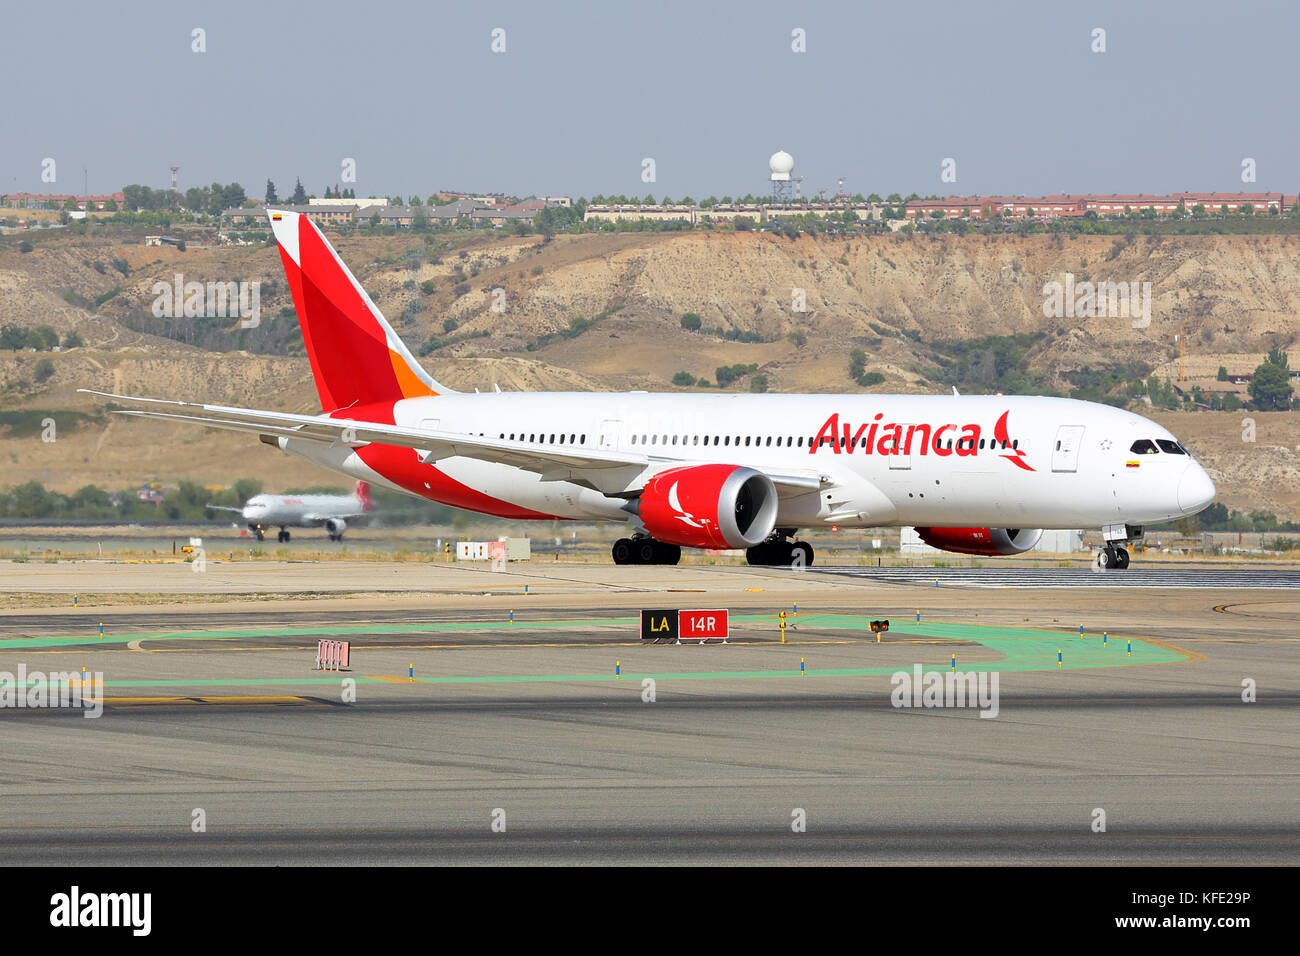 Madrid, Espagne - 12 août 2015 : Boeing 787-8 dreamliner d'Avianca airlines le roulage à l'aéroport Madrid Barajas Adolfo Suarez. Banque D'Images